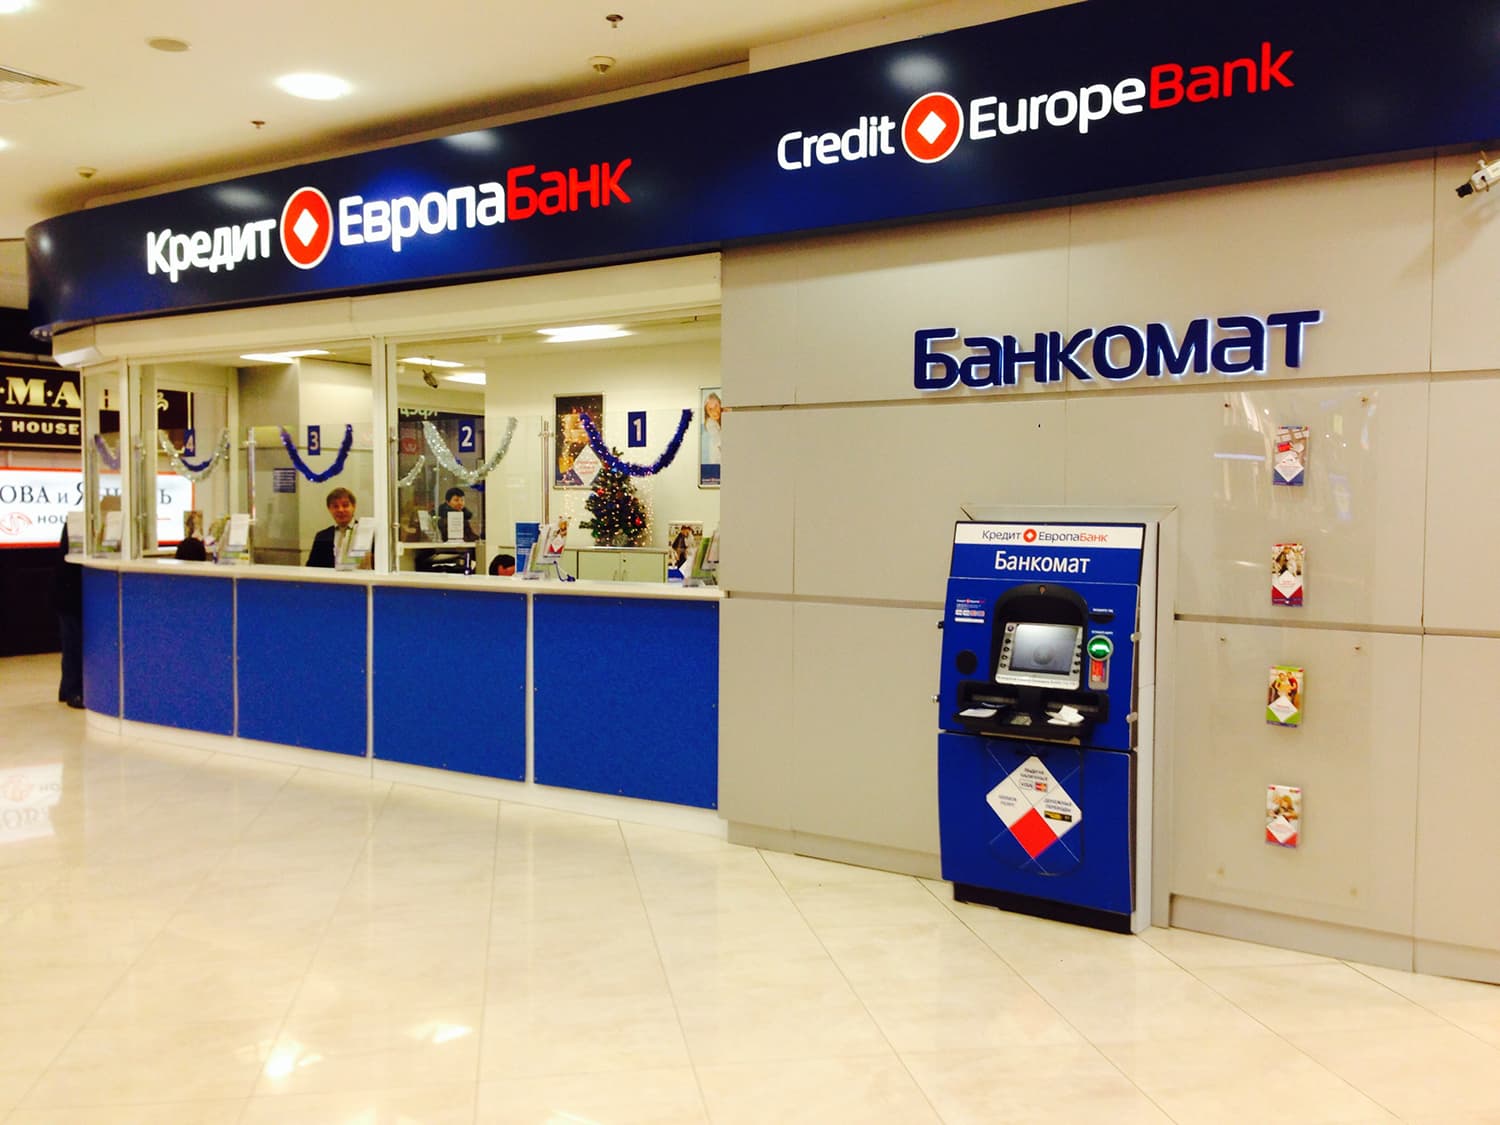 Европа банк фото. Европа банк. Кредит Европа банк. АО кредит Европа банк Россия. Логотип кредит Европа банка.